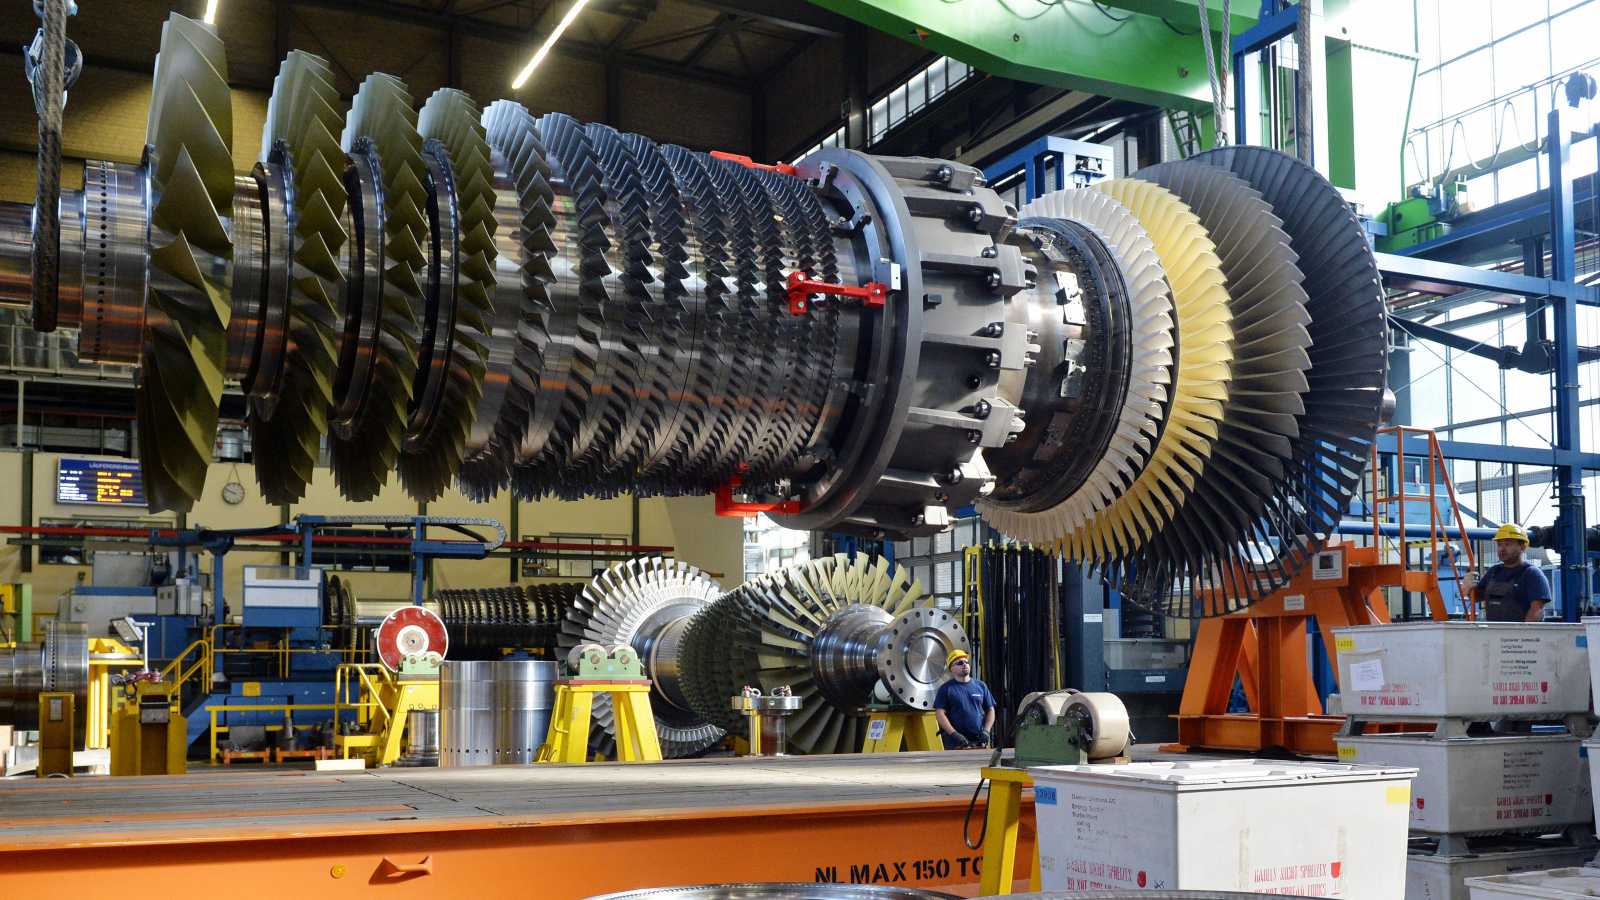 Газпром сообщил, что ждет техническую документацию на поставки турбины для Северного потока-2 от Siemens